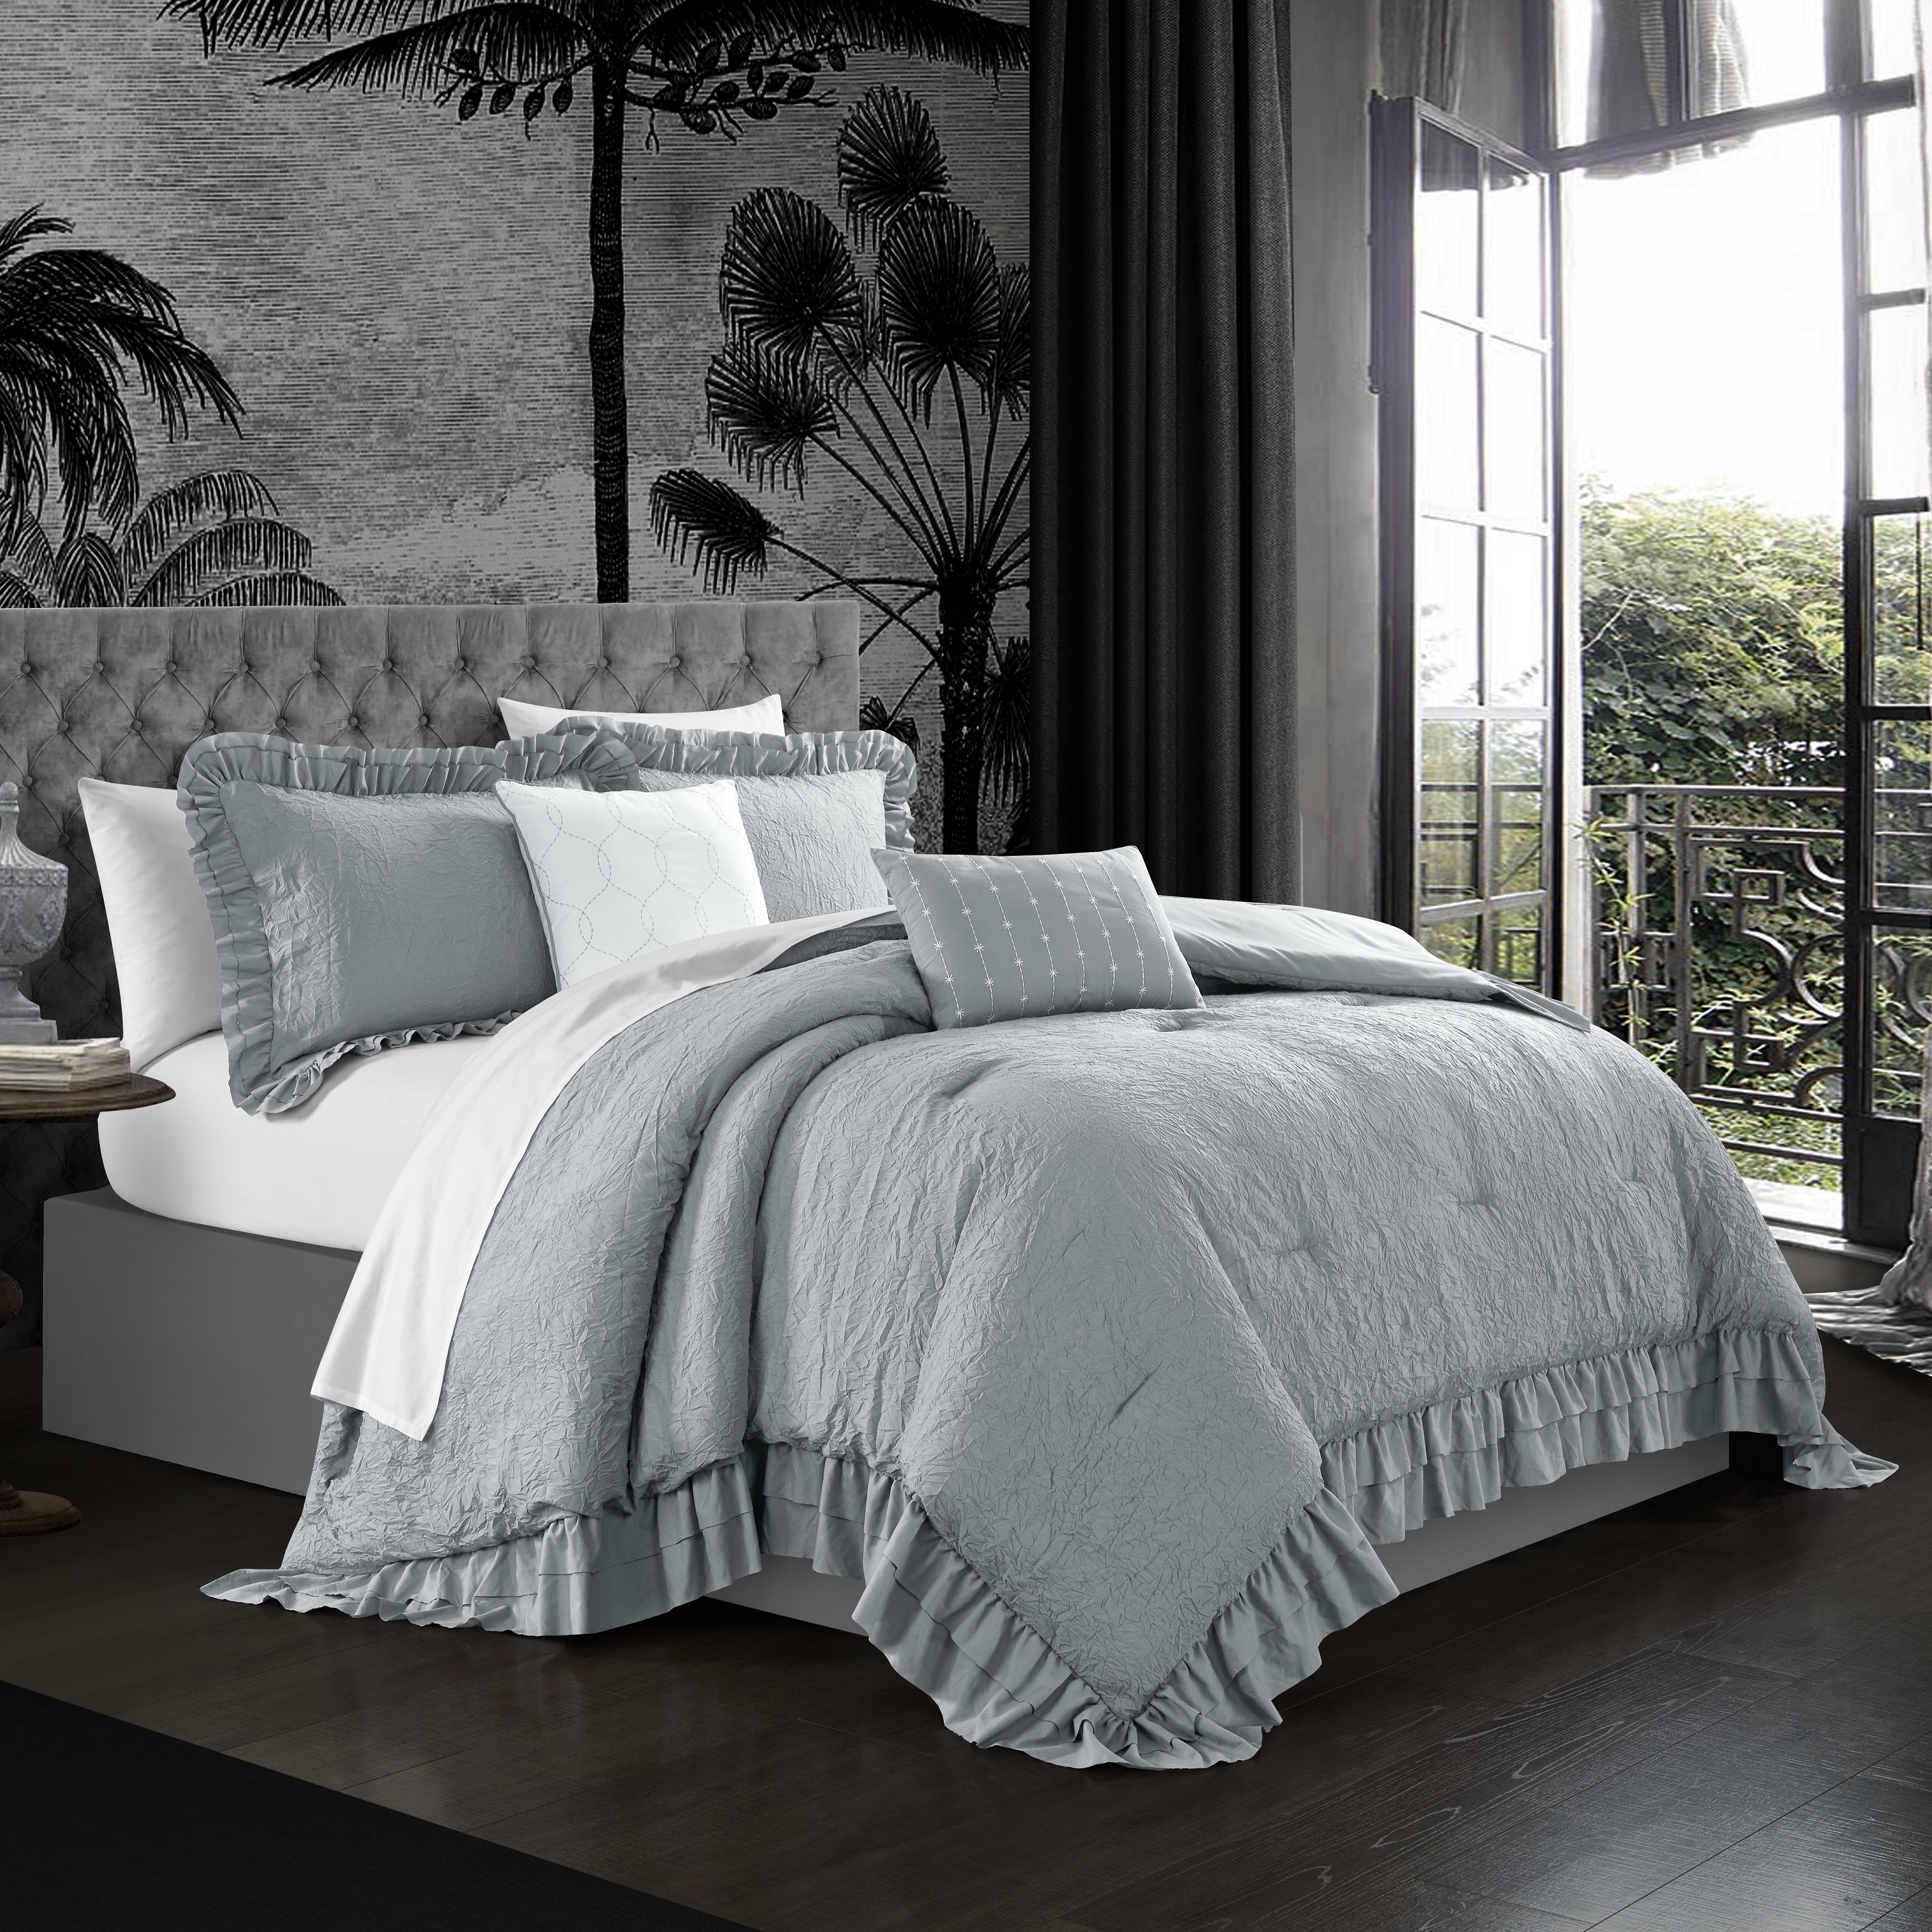 5 Piece Kensley Comforter Set Washed Crinkle Ruffled Flange Border Design Bedding - Blush, Twin